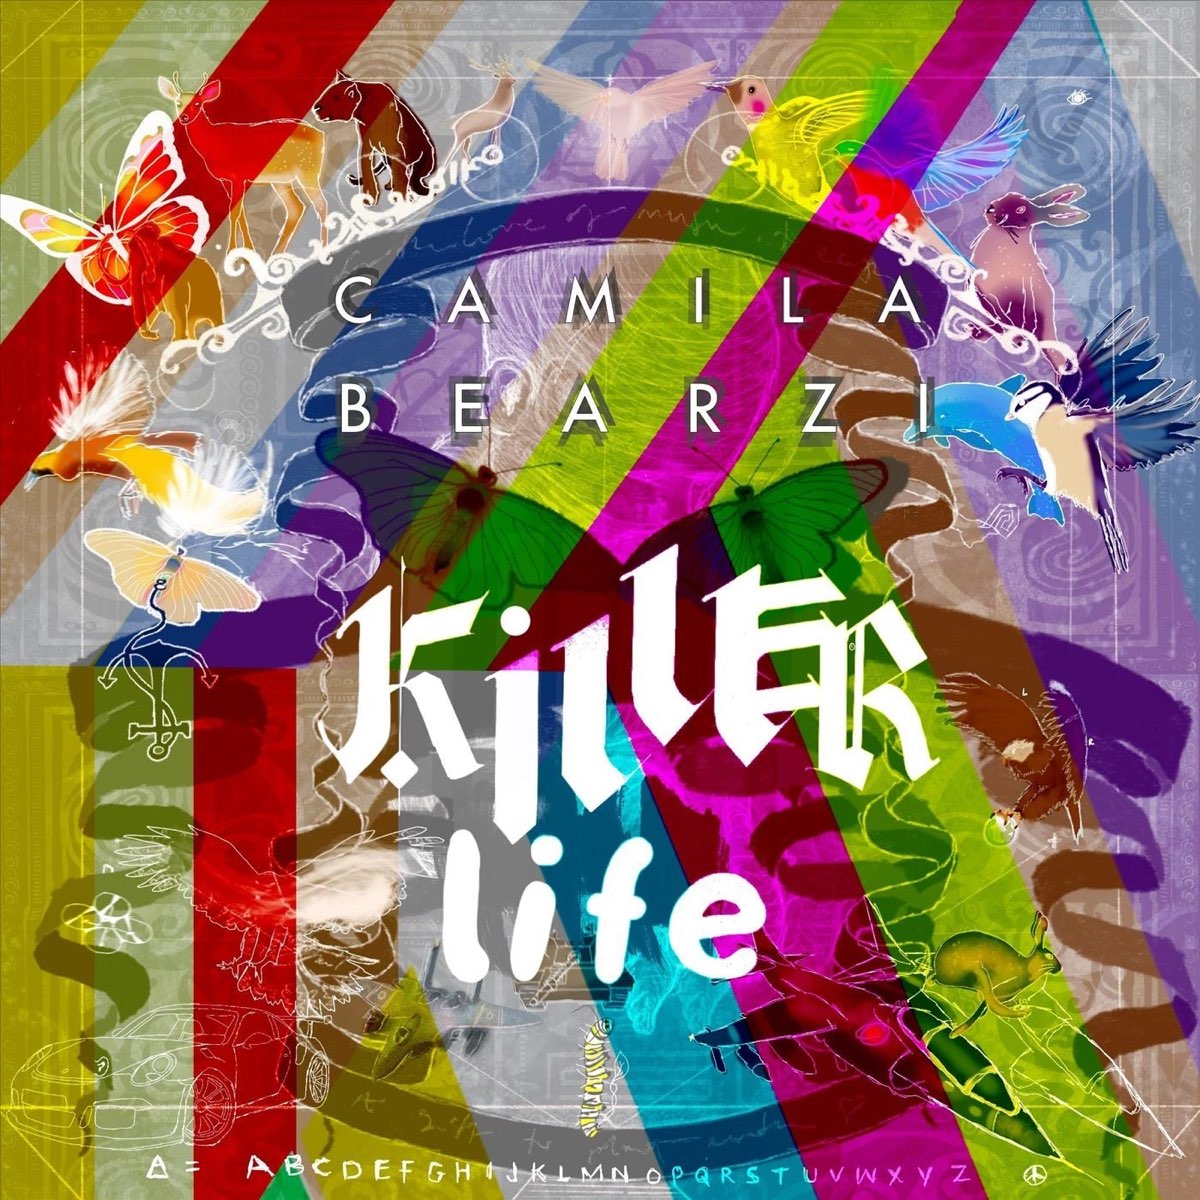 Life is Killing me album. Life is Killing me Label. Killer life